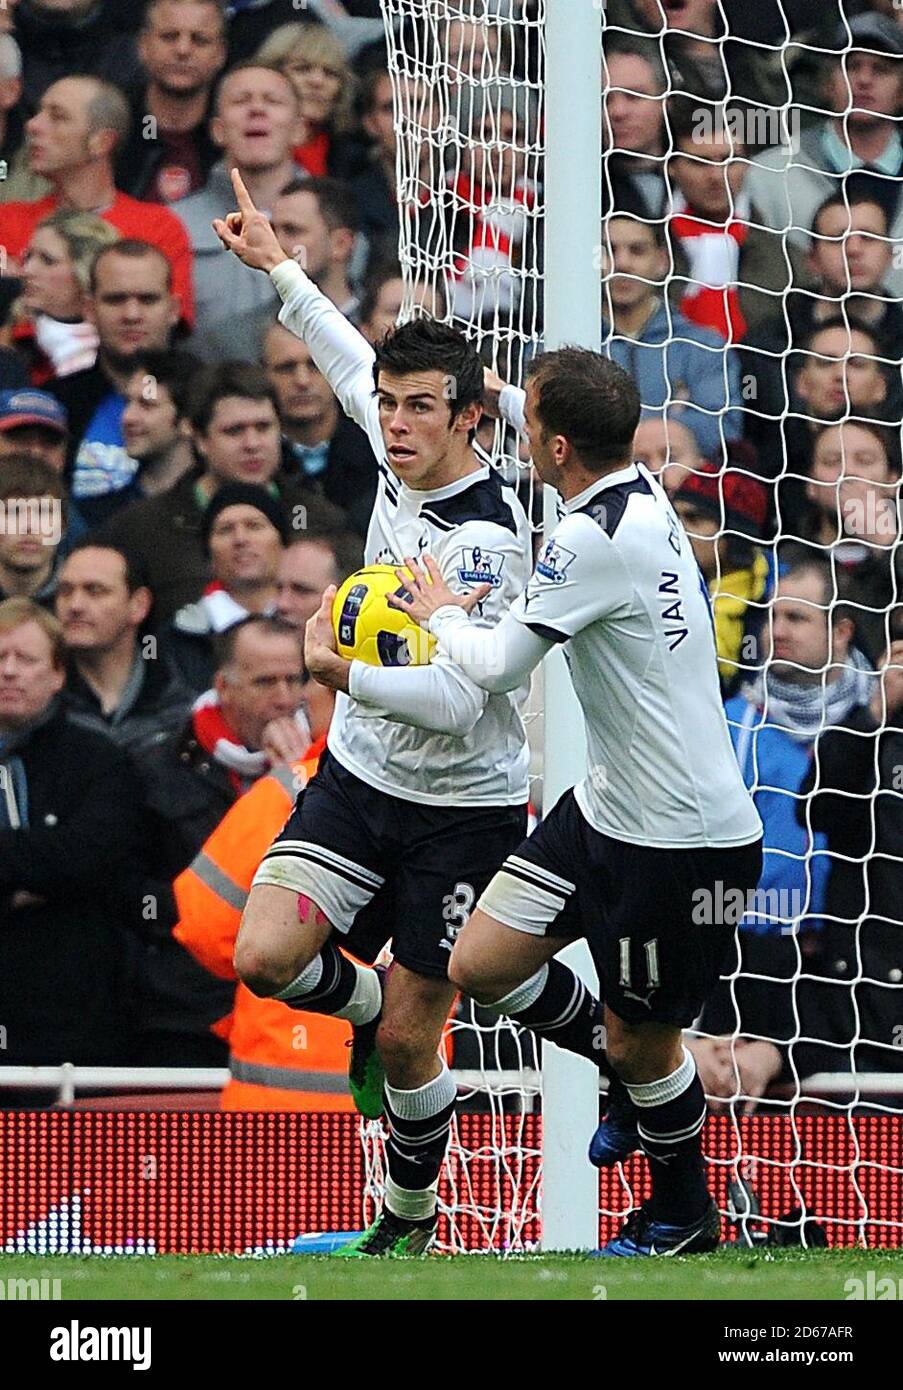 Gareth Bale von Tottenham Hotspur (links) feiert seine ersten Tore Ziel des Spiels mit Teamkollege Rafael Van der Vaart (Rechts) Stockfoto